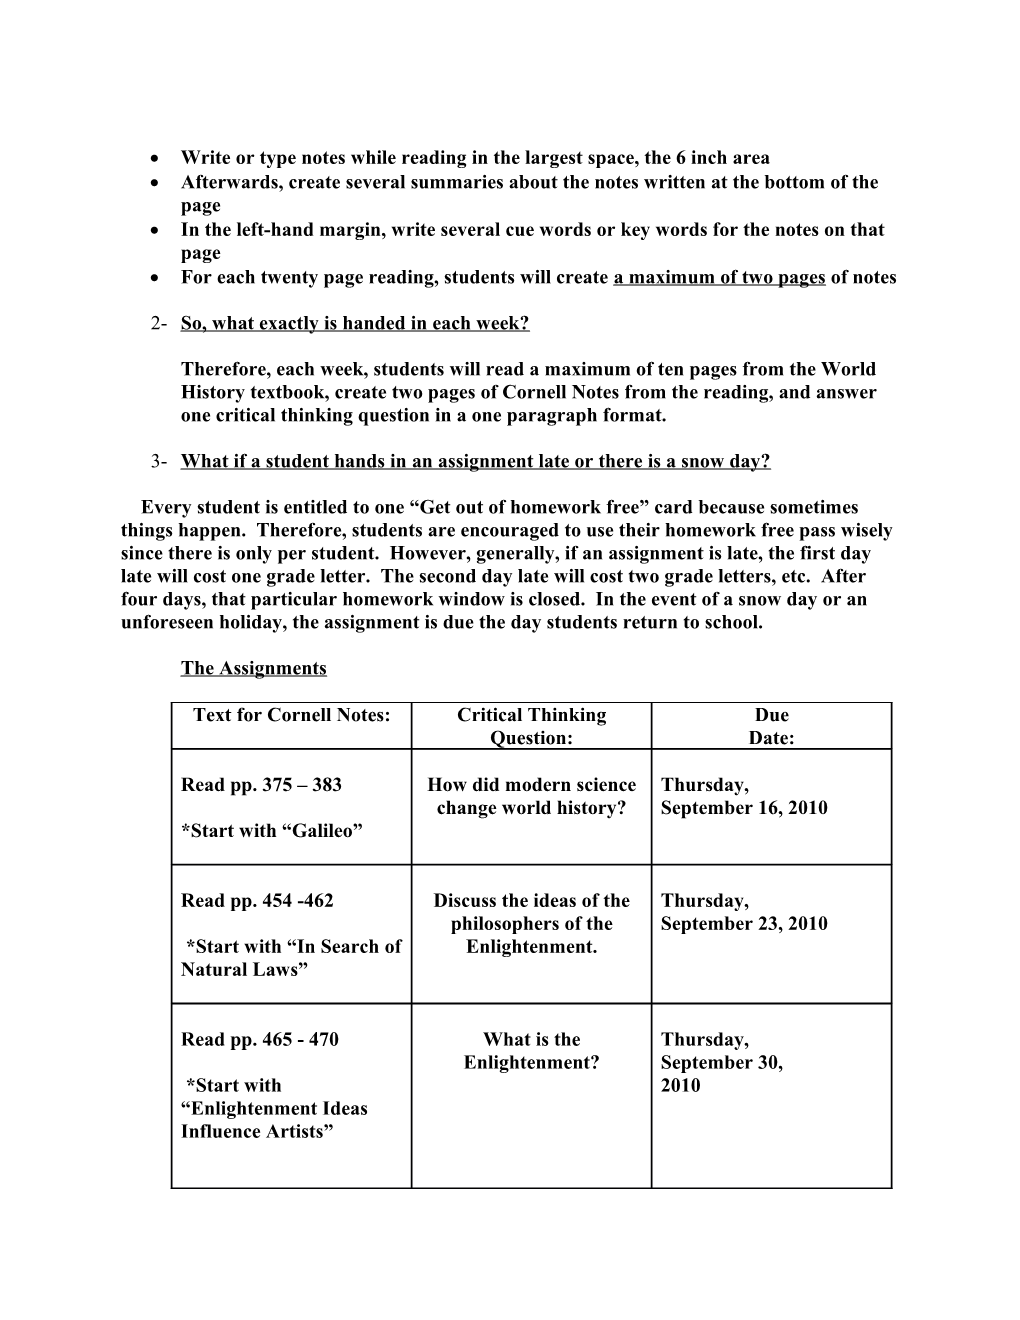 Homework Syllabus for the 2010-2011 School Year